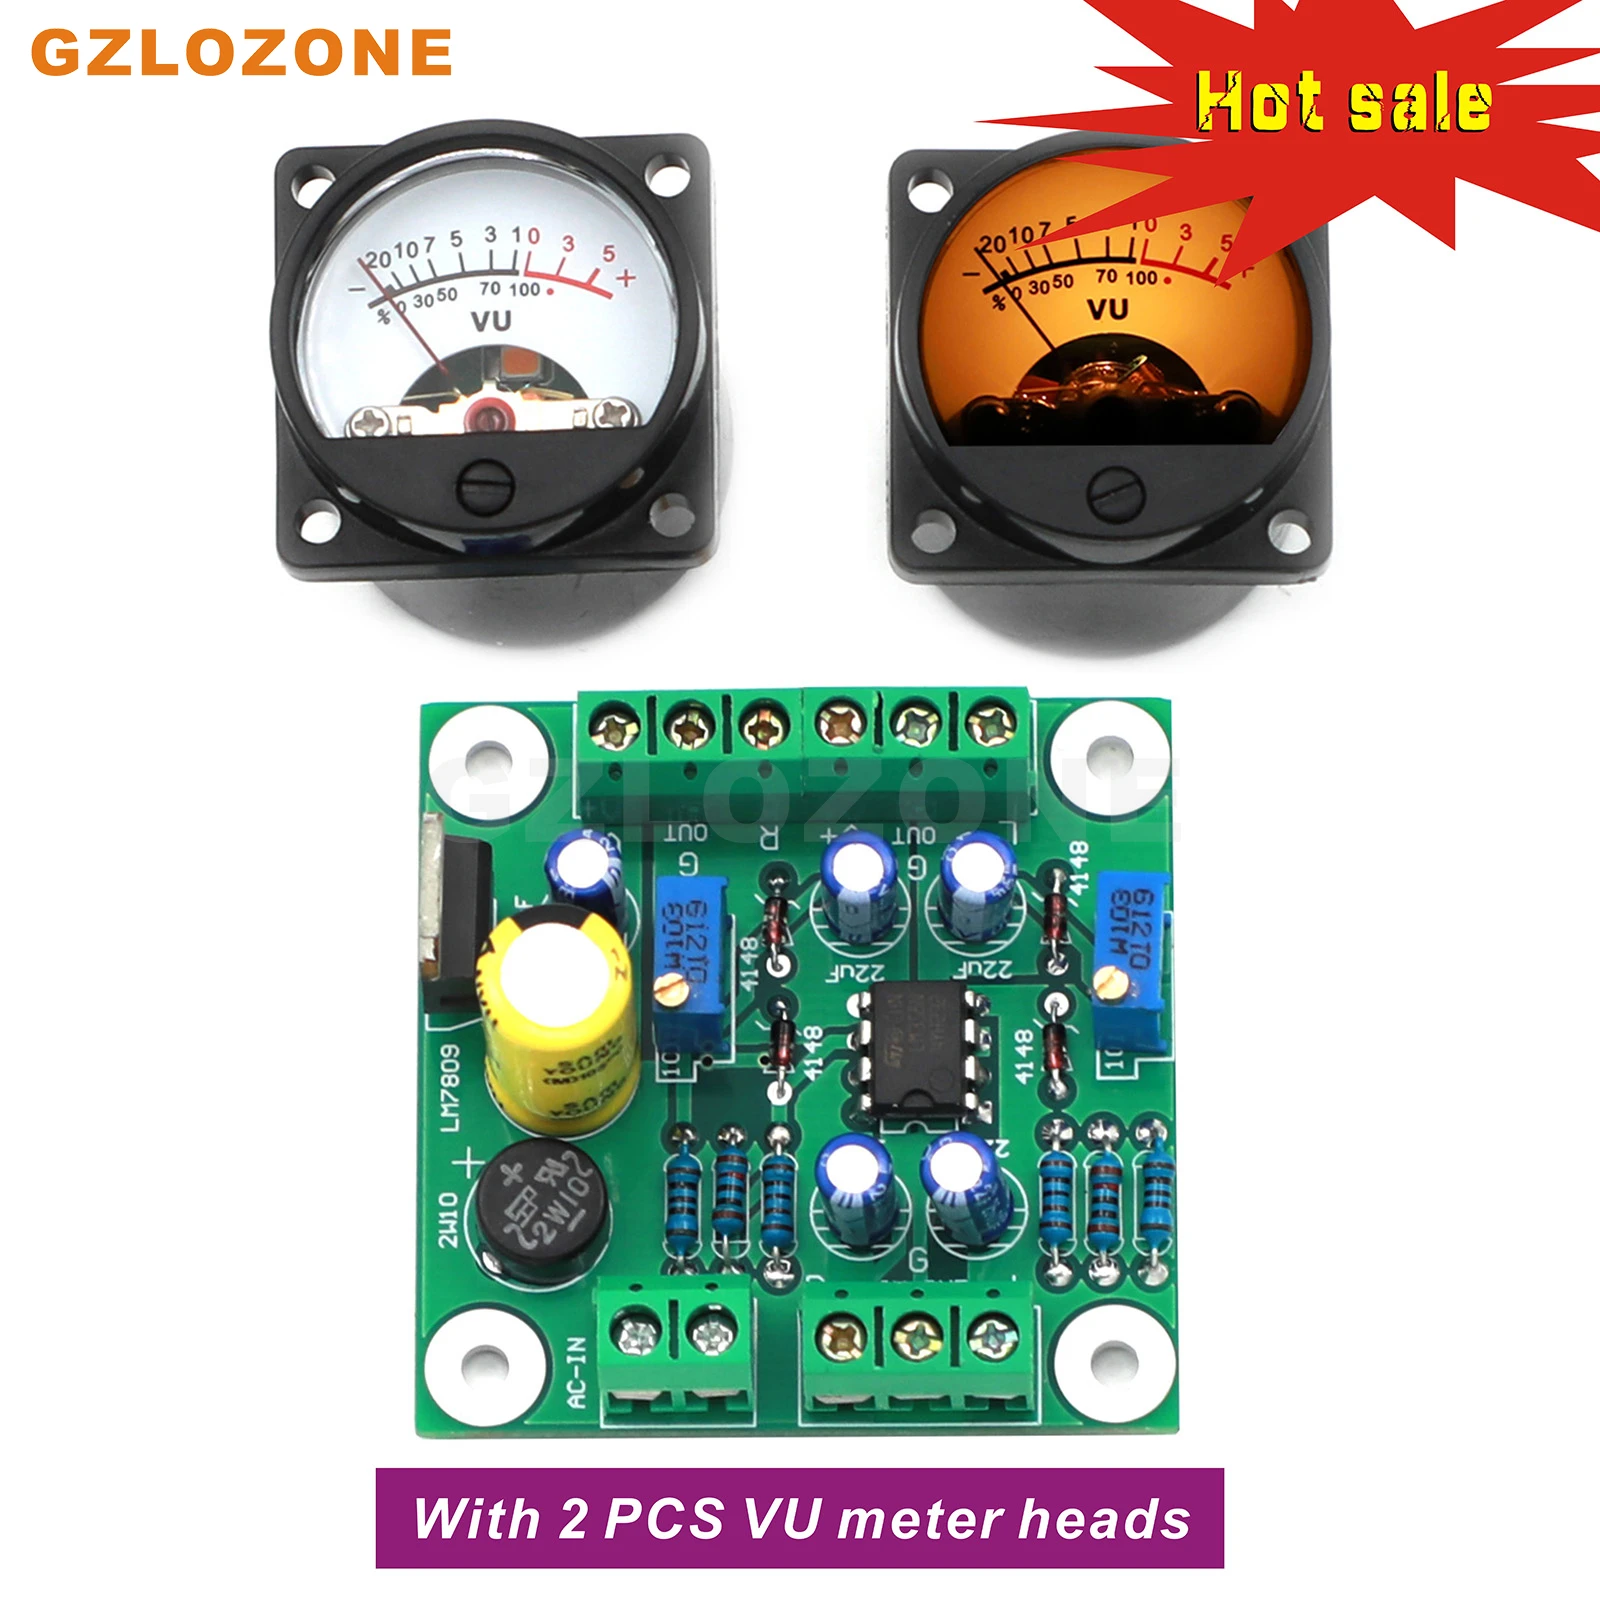 ZEROZONE LM358 VU Level Audio Meter драйвер DIY Kit/Готовая плата + 2 шт. С теплой светодиодной измерительной головкой, регулируемой чувствительностью